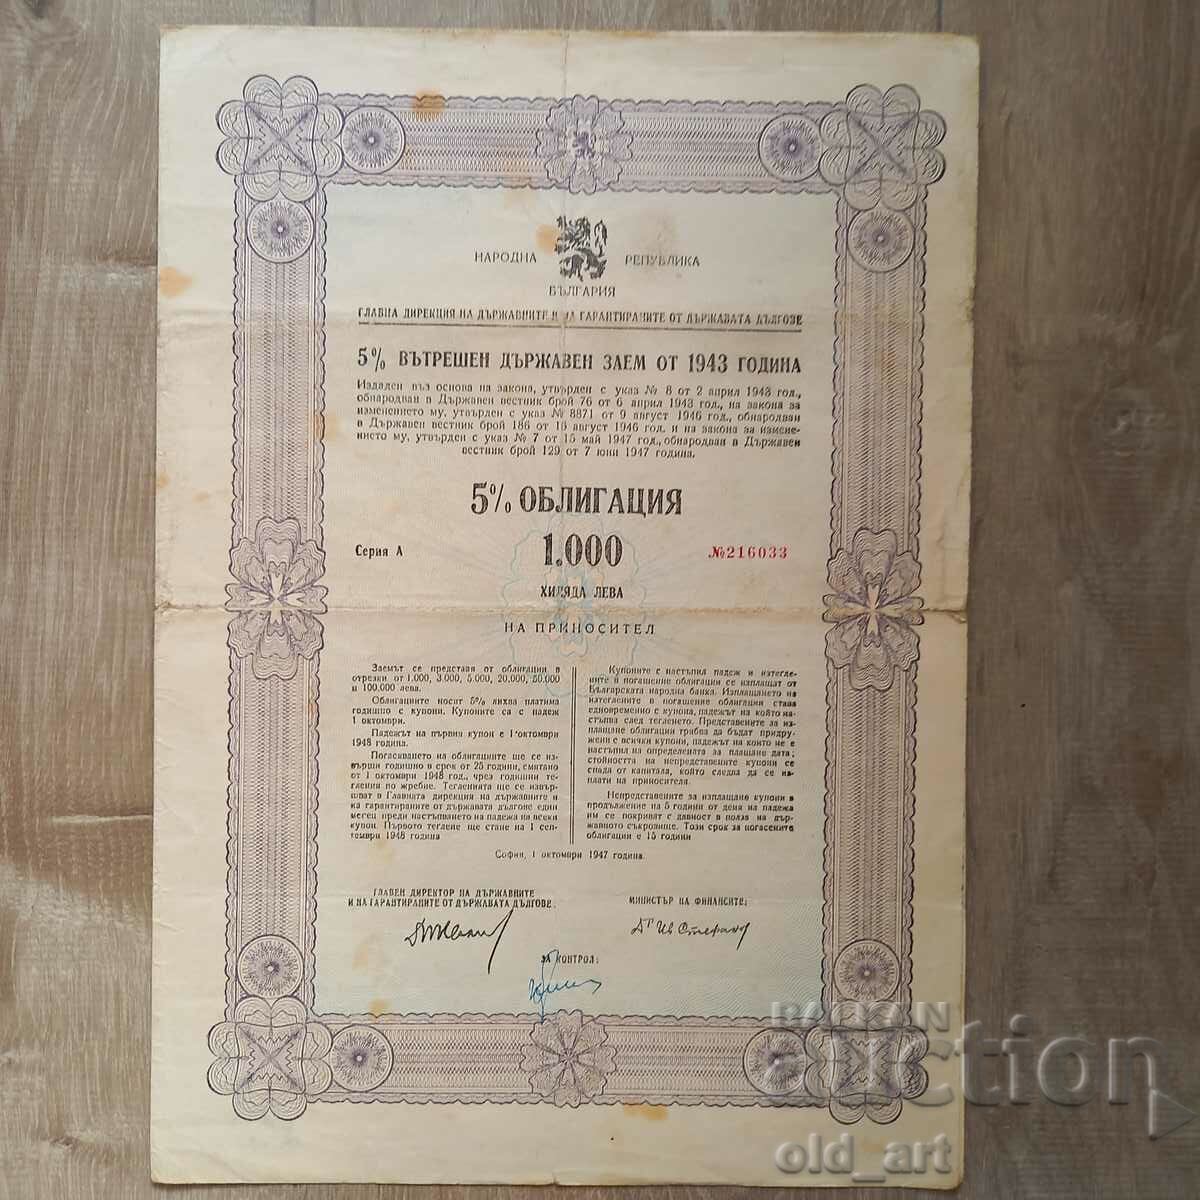 Ομόλογο 1000 BGN 1943. Εσωτερικό κρατικό δάνειο